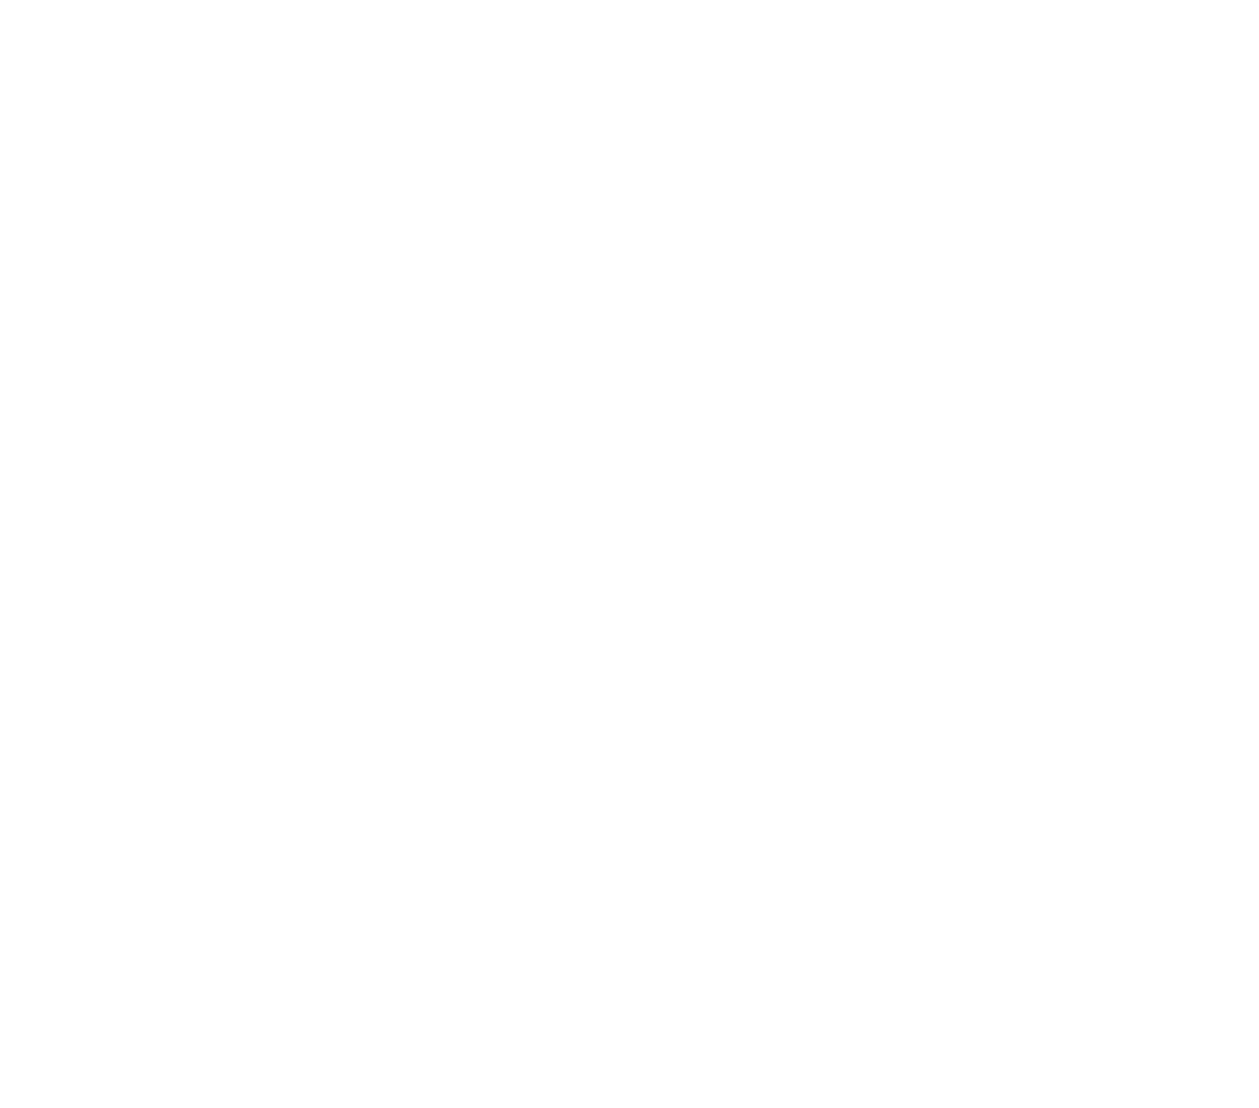 Company motto Integrity. Trust. Creativity.